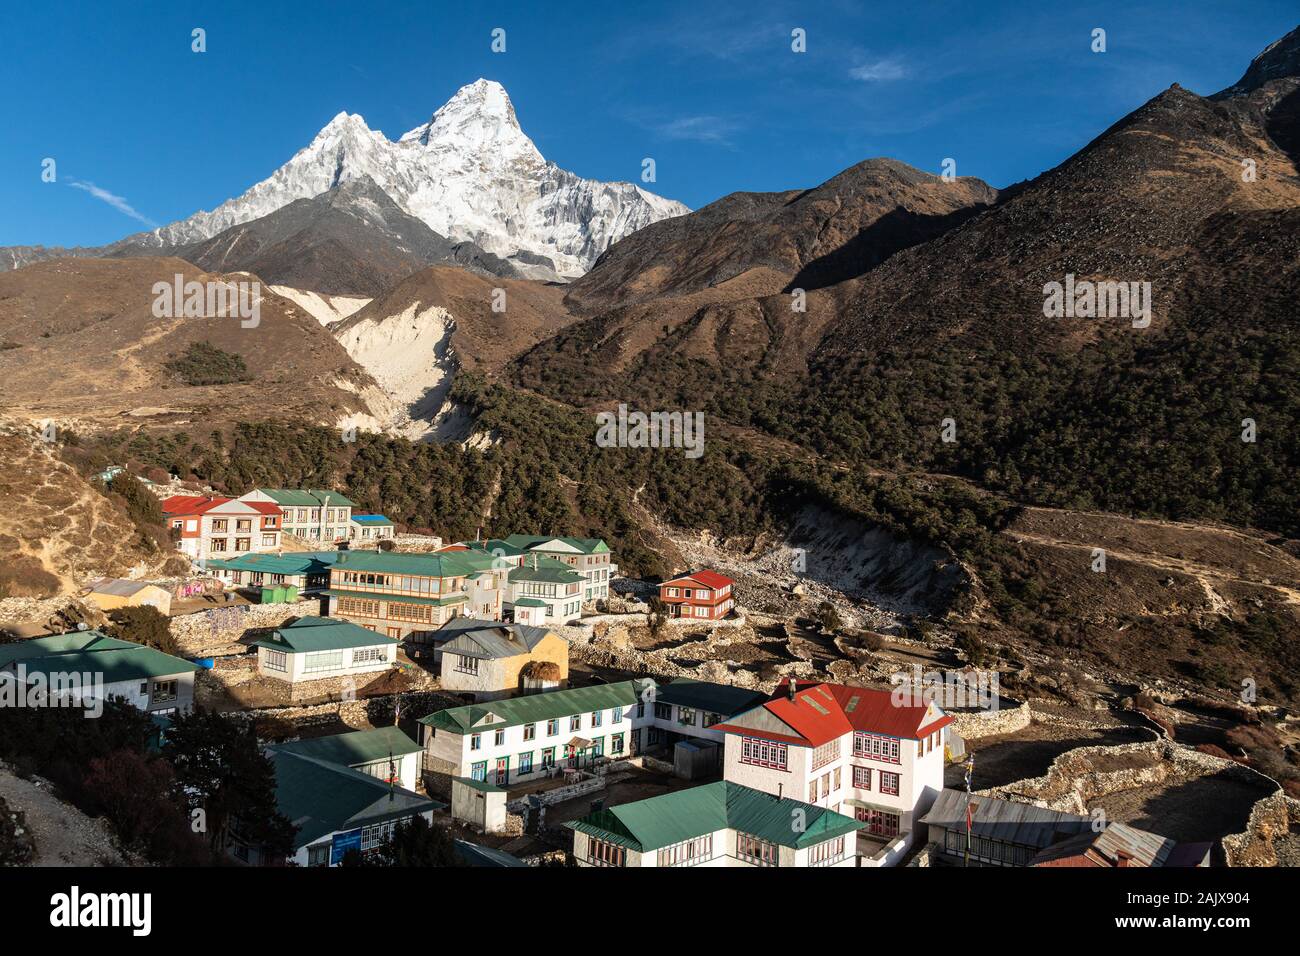 Pangboche villaggio con molte case da tè e casette ai piedi dell'Ama Dablam peak lungo il campo base Everest trek in Himalaya in Nepal Foto Stock